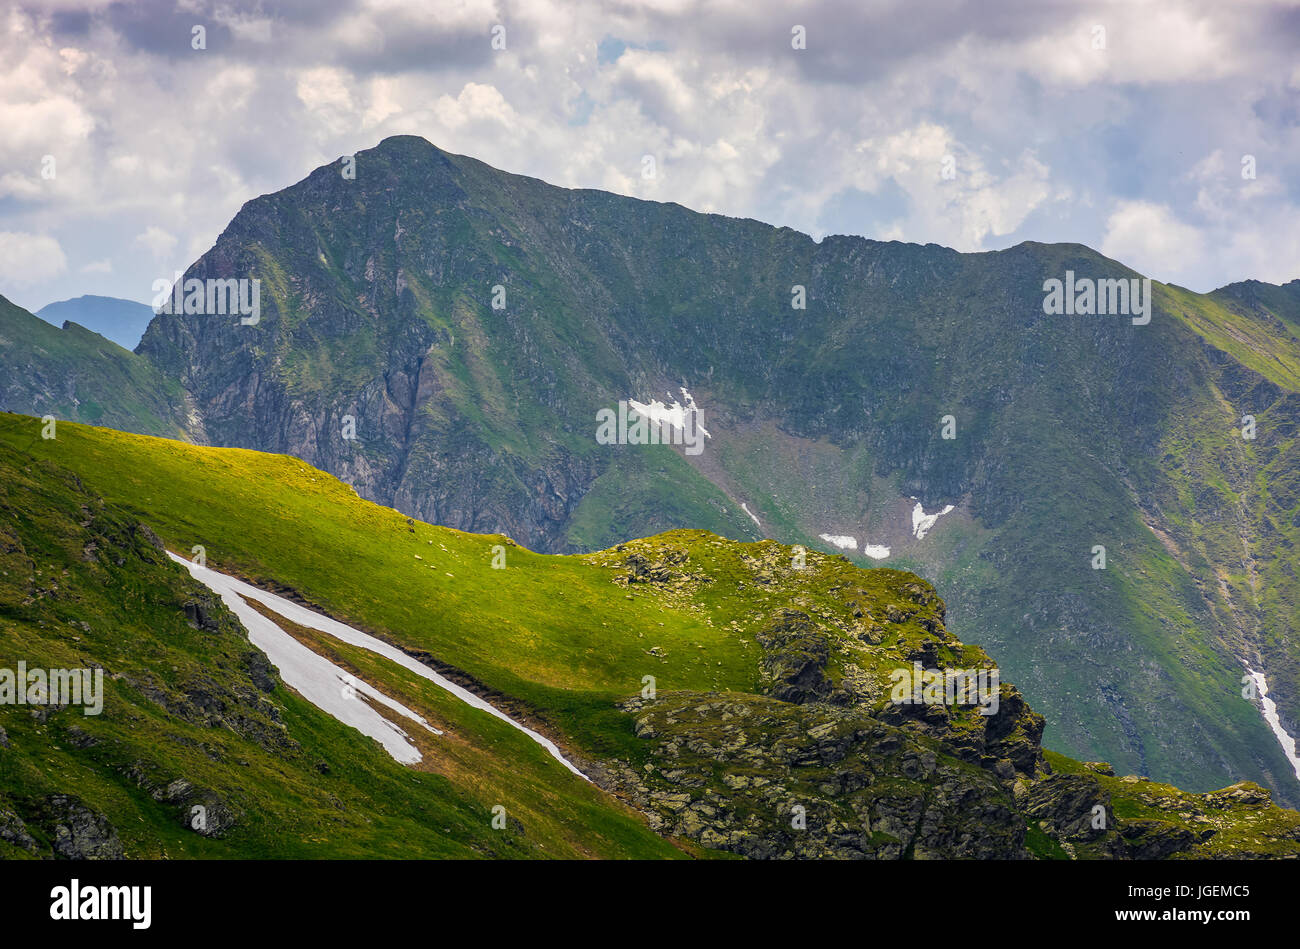 Bordo roccioso sul pendio erboso con neve. majestic dei Carpazi paesaggio estivo in Romania le montagne Foto Stock